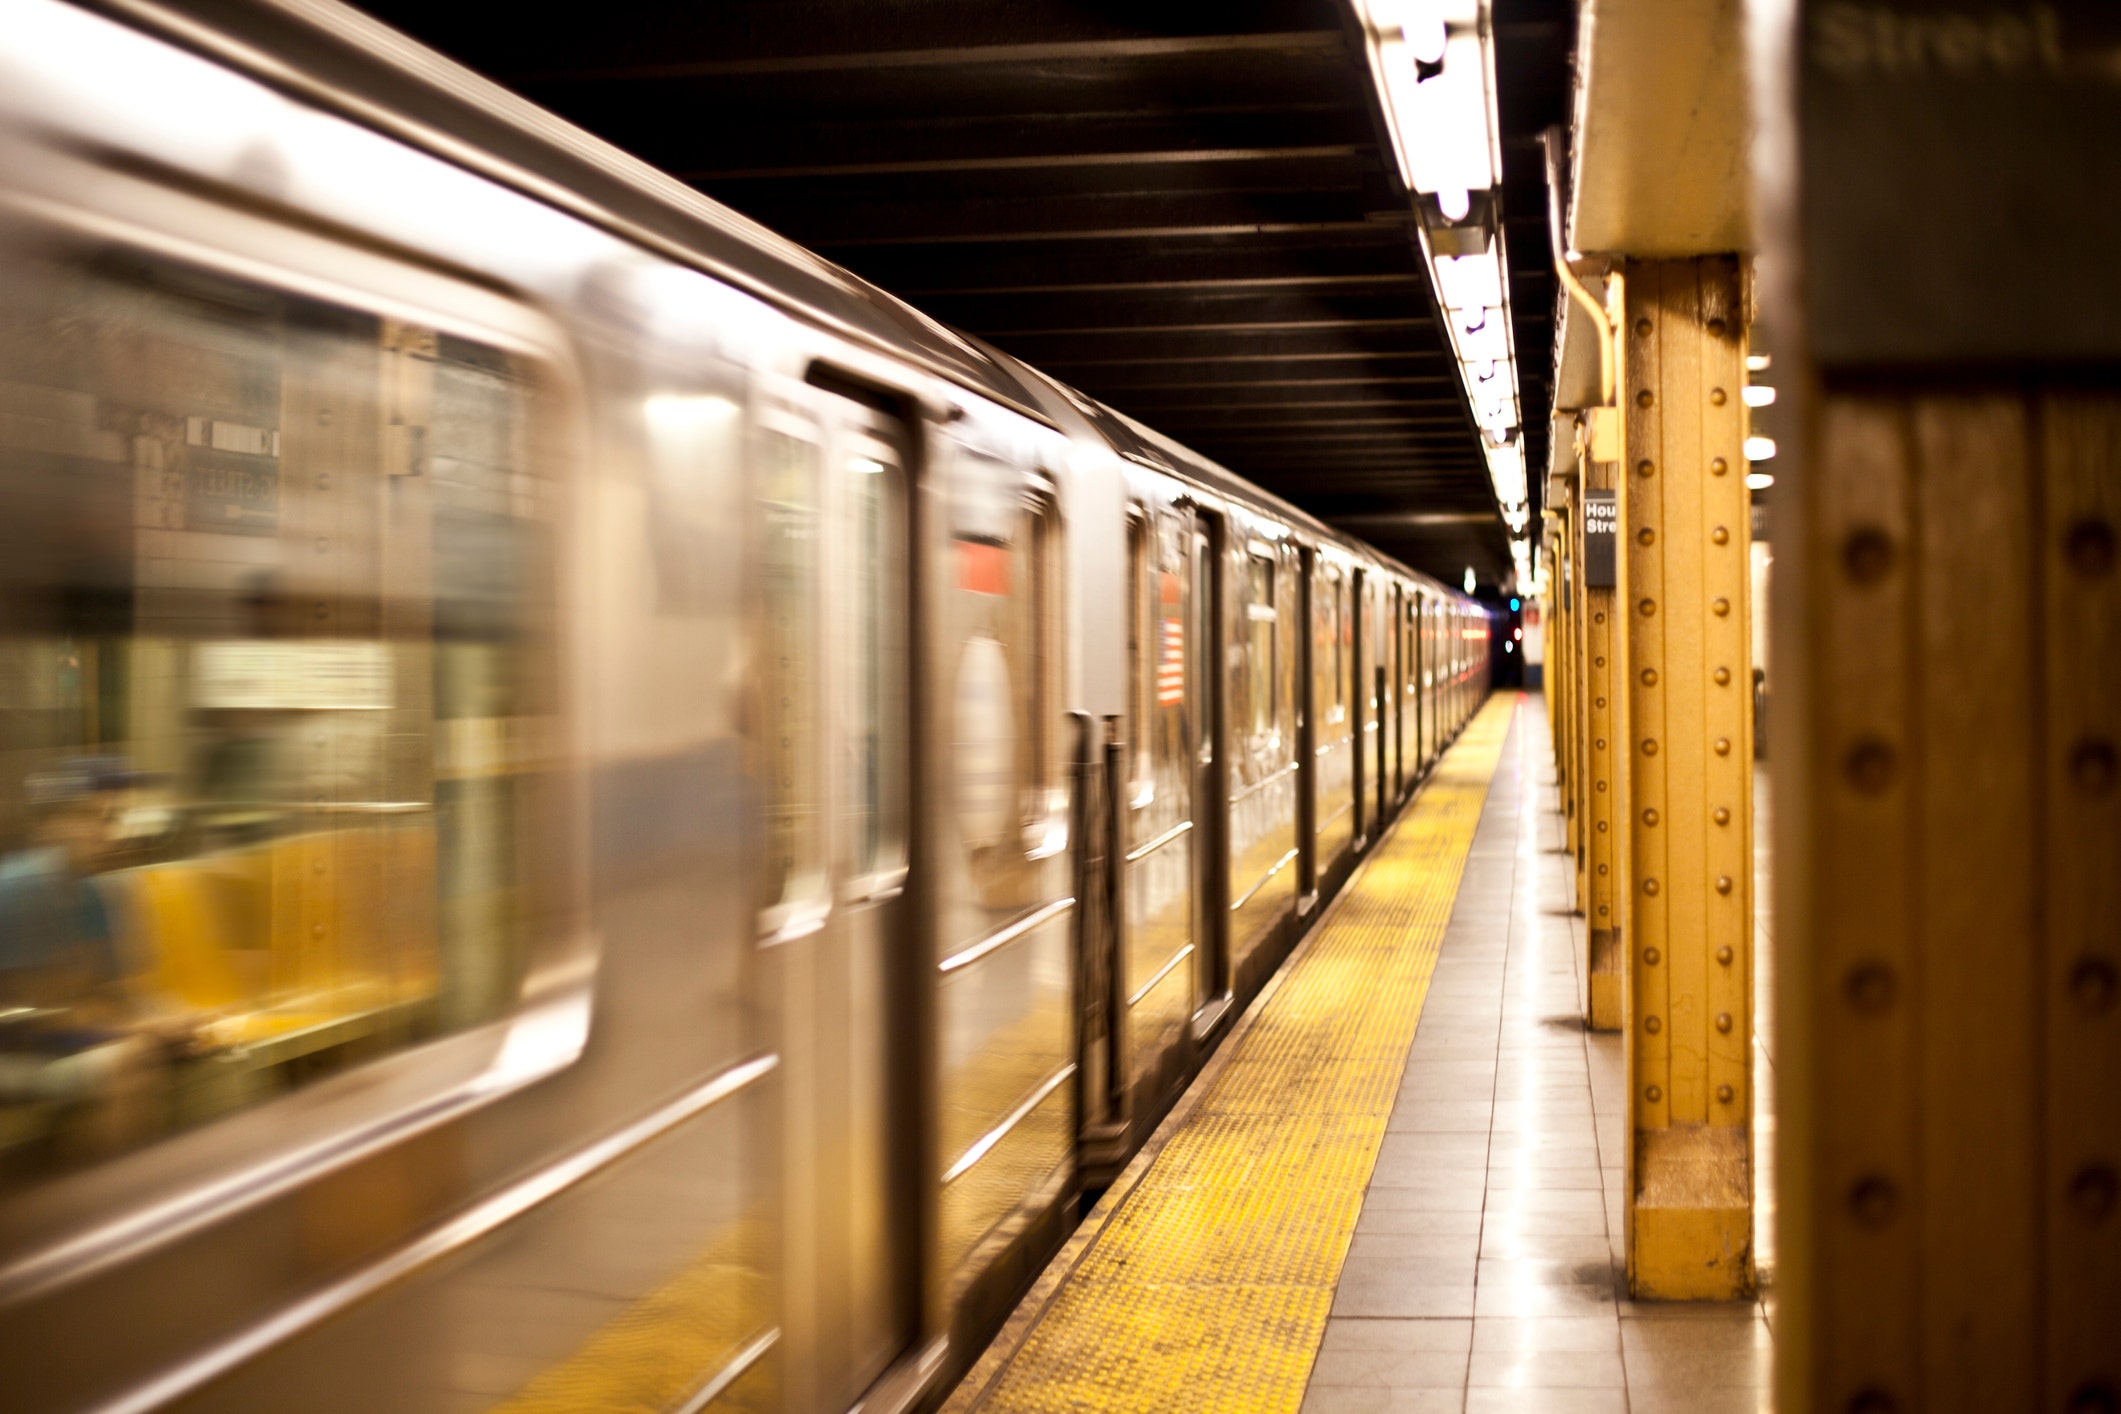 New York UPS workers slashed on subway after argument turns violent